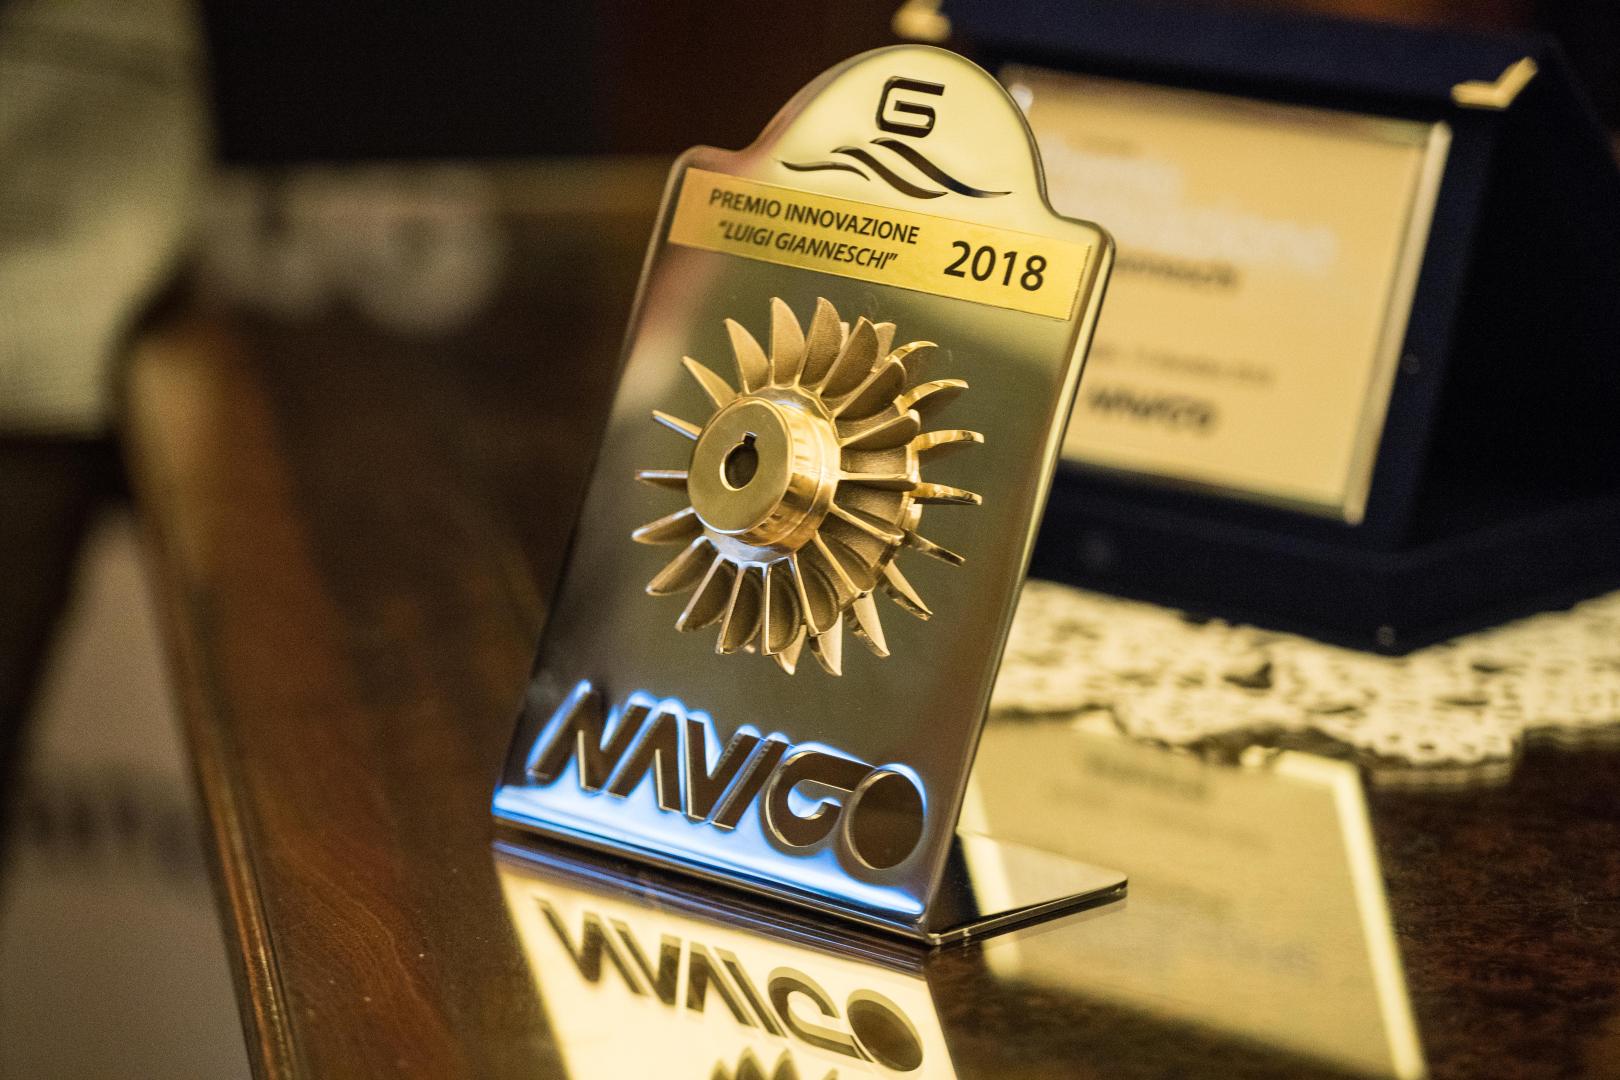 Premio “Luigi Gianneschi”: il riconoscimento aperto a imprese innovative della nautica